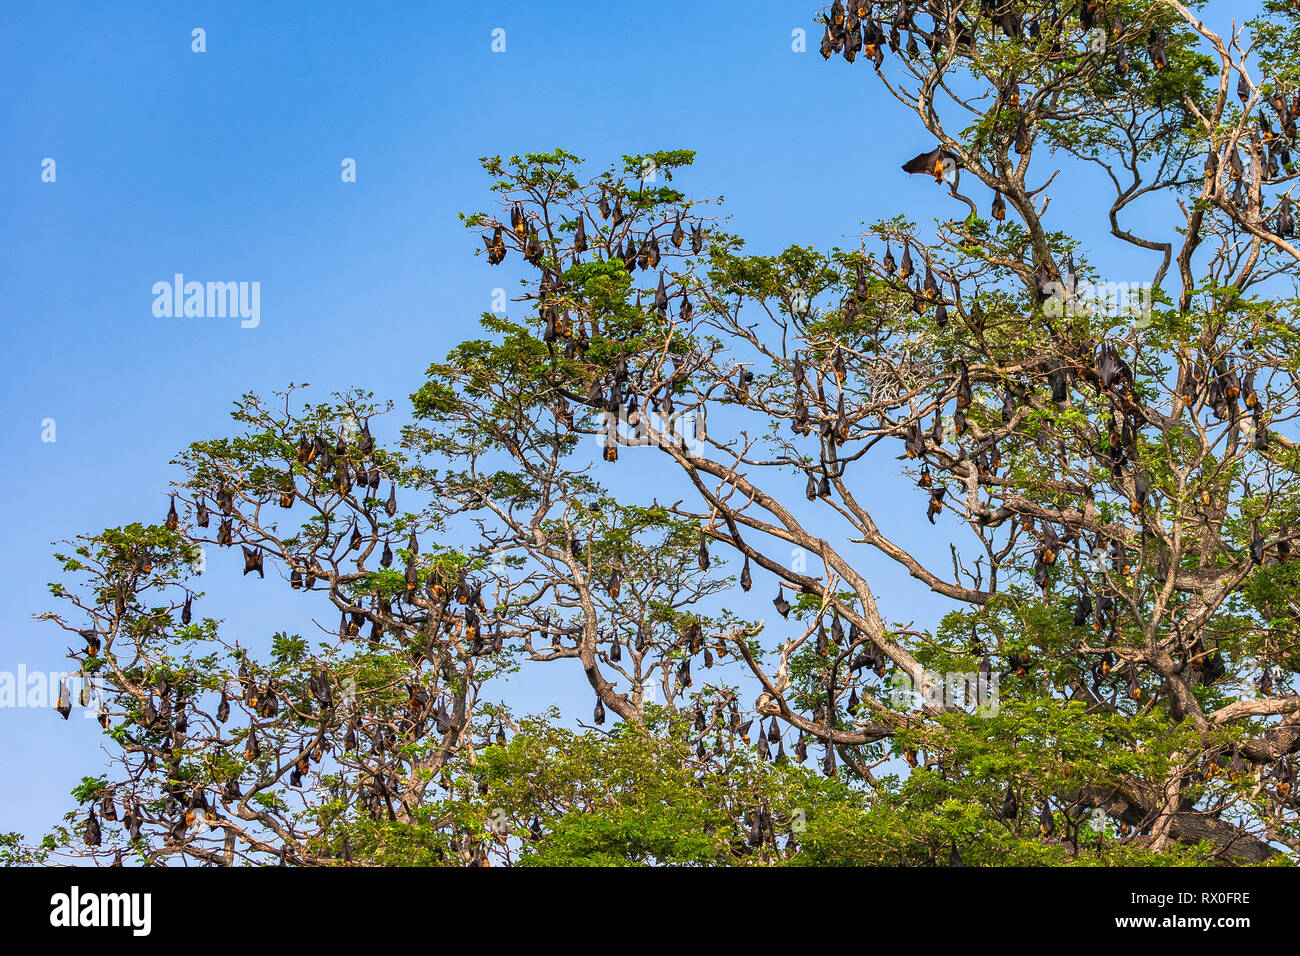 Fruit bat trees (Flying fox). Tissamaharama, Sri Lanka. Stock Photo